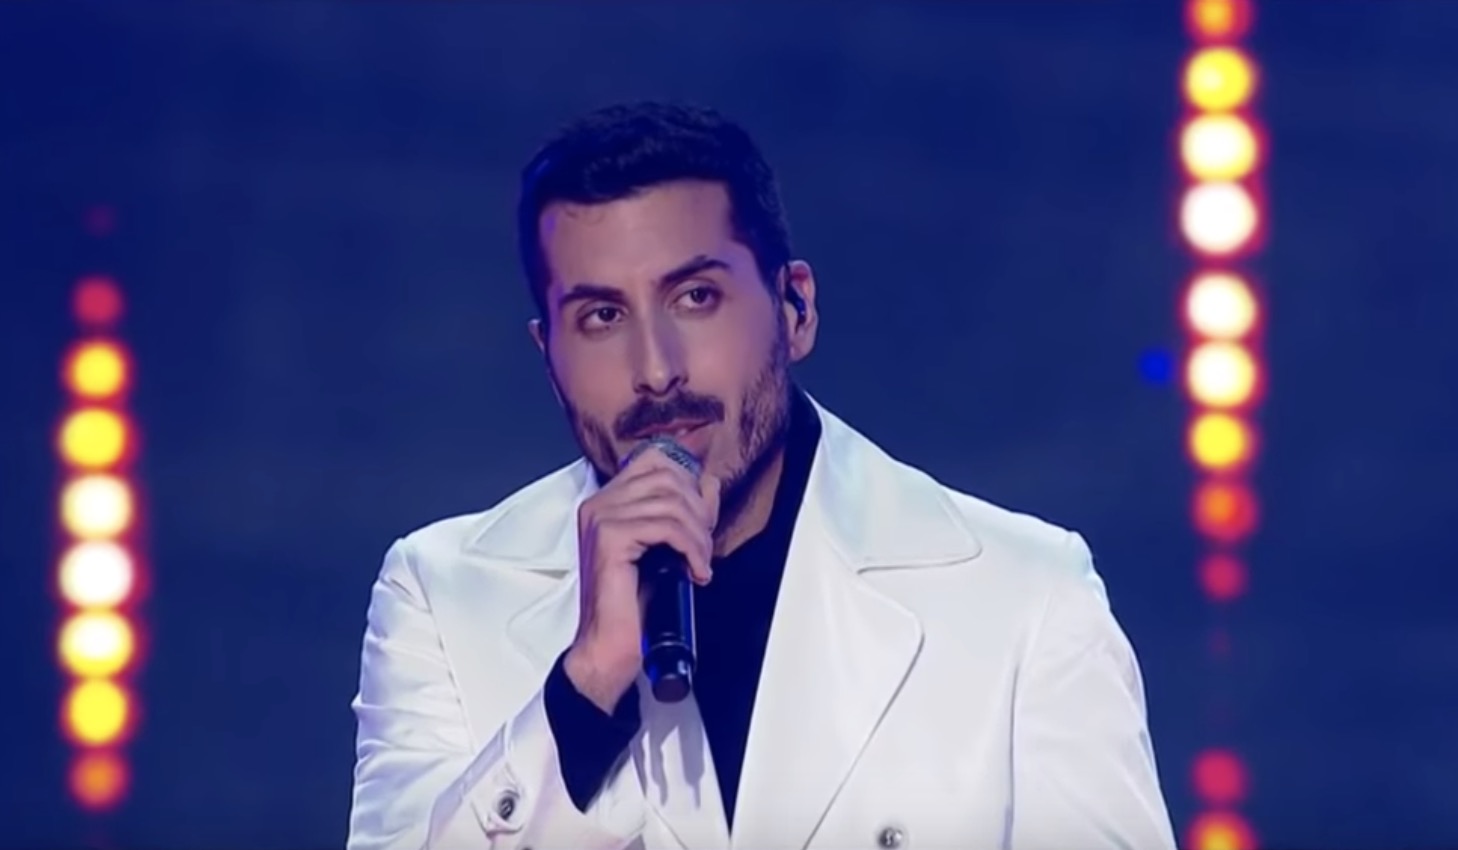 Kobi Marimi - Eurovisie Songfestival 2019 in Tel Aviv